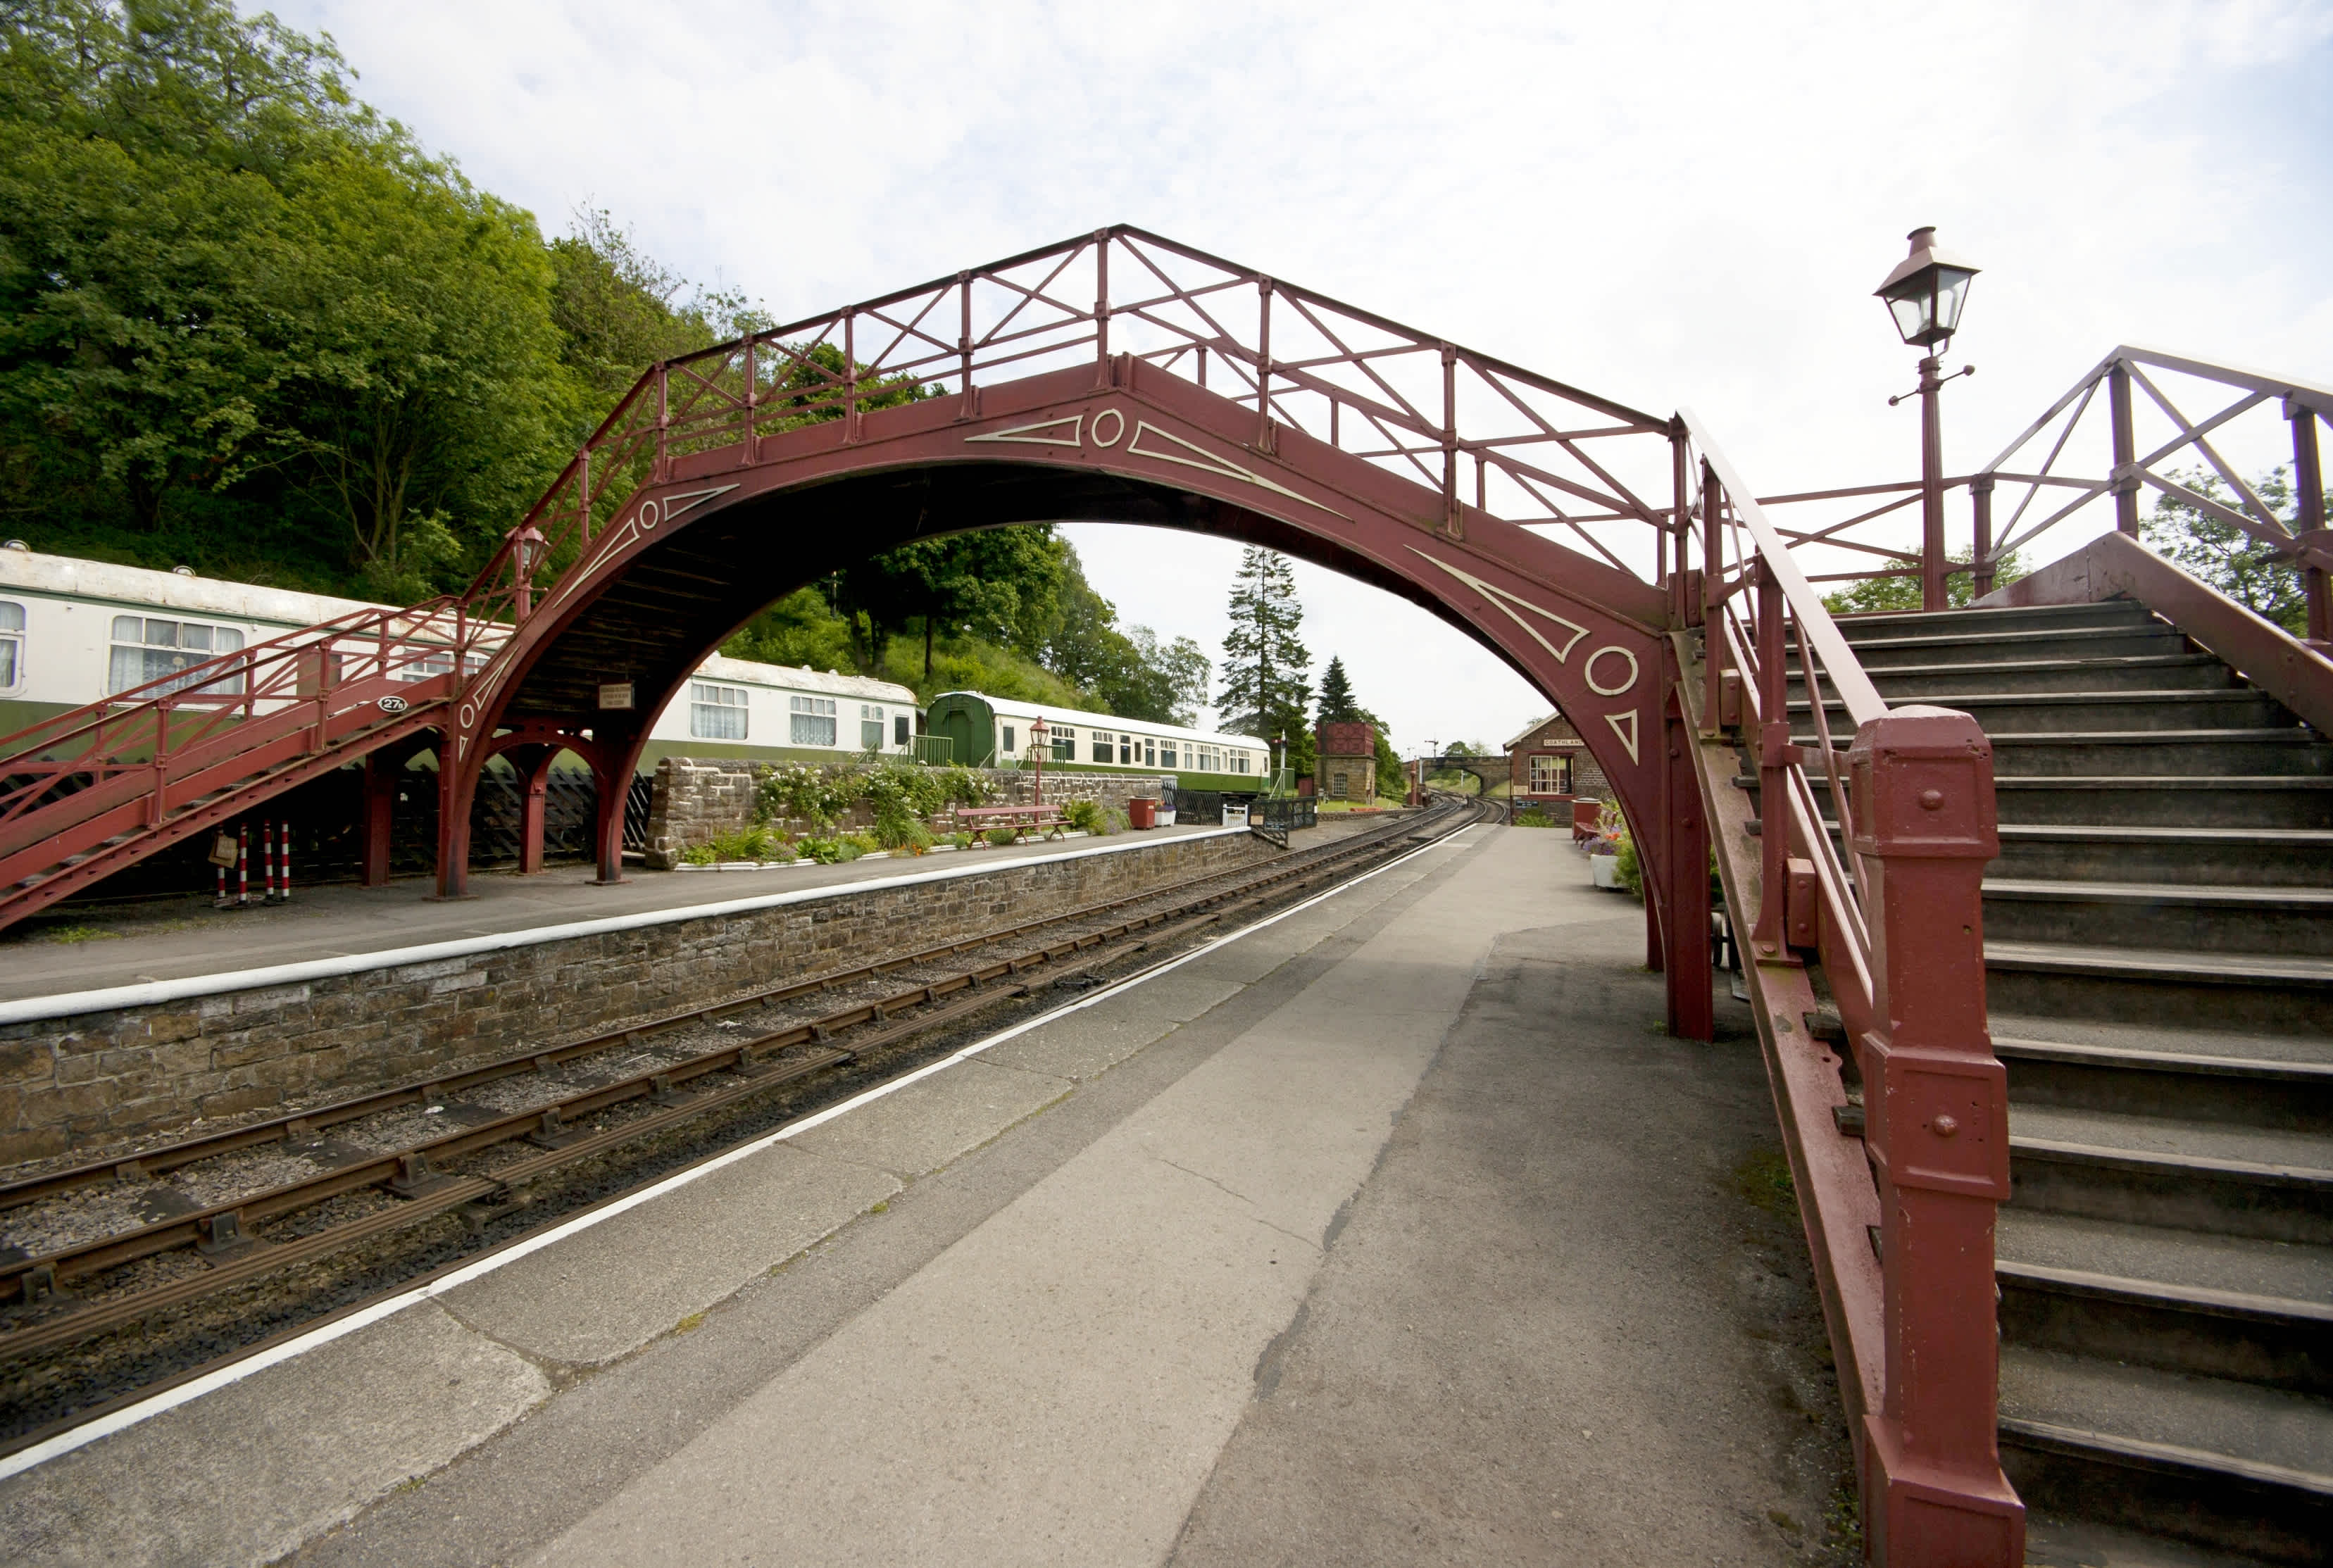 Rote Bahnhofsbrücke, die als Kulisse für Hoagsmeade diente